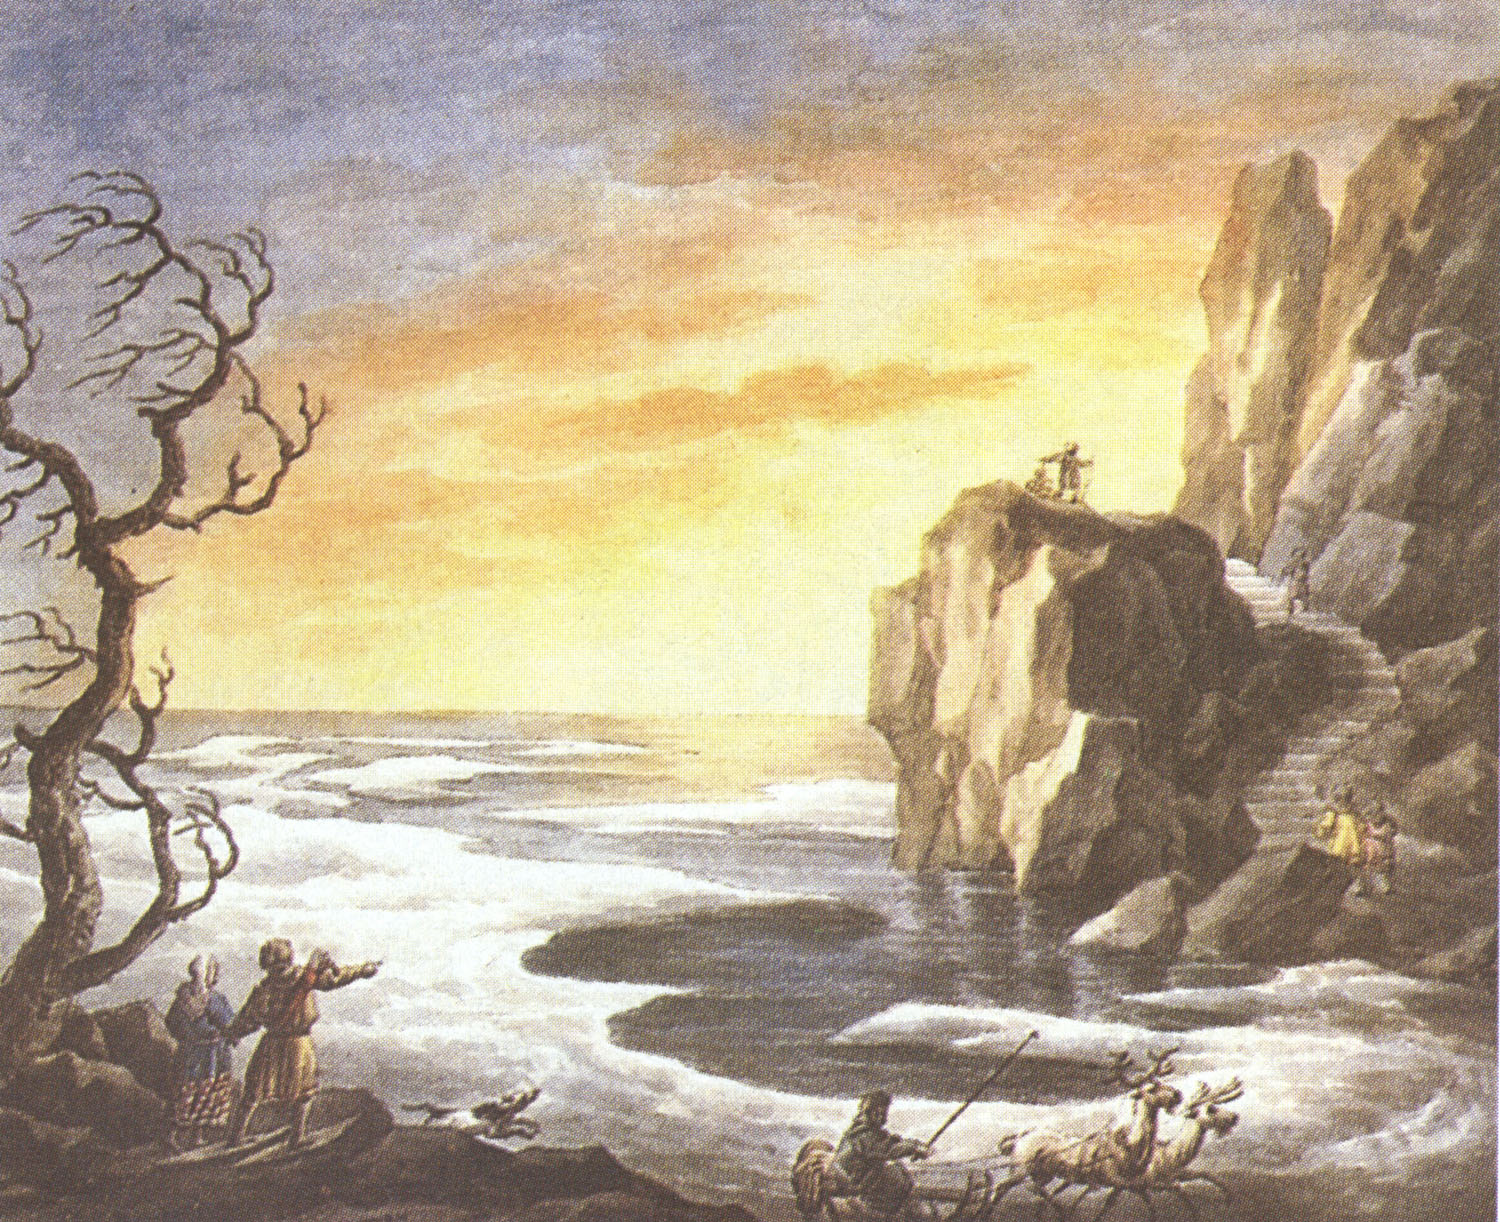 Е. Корнеев. "На берегу Охотского моря". 1810-1812.